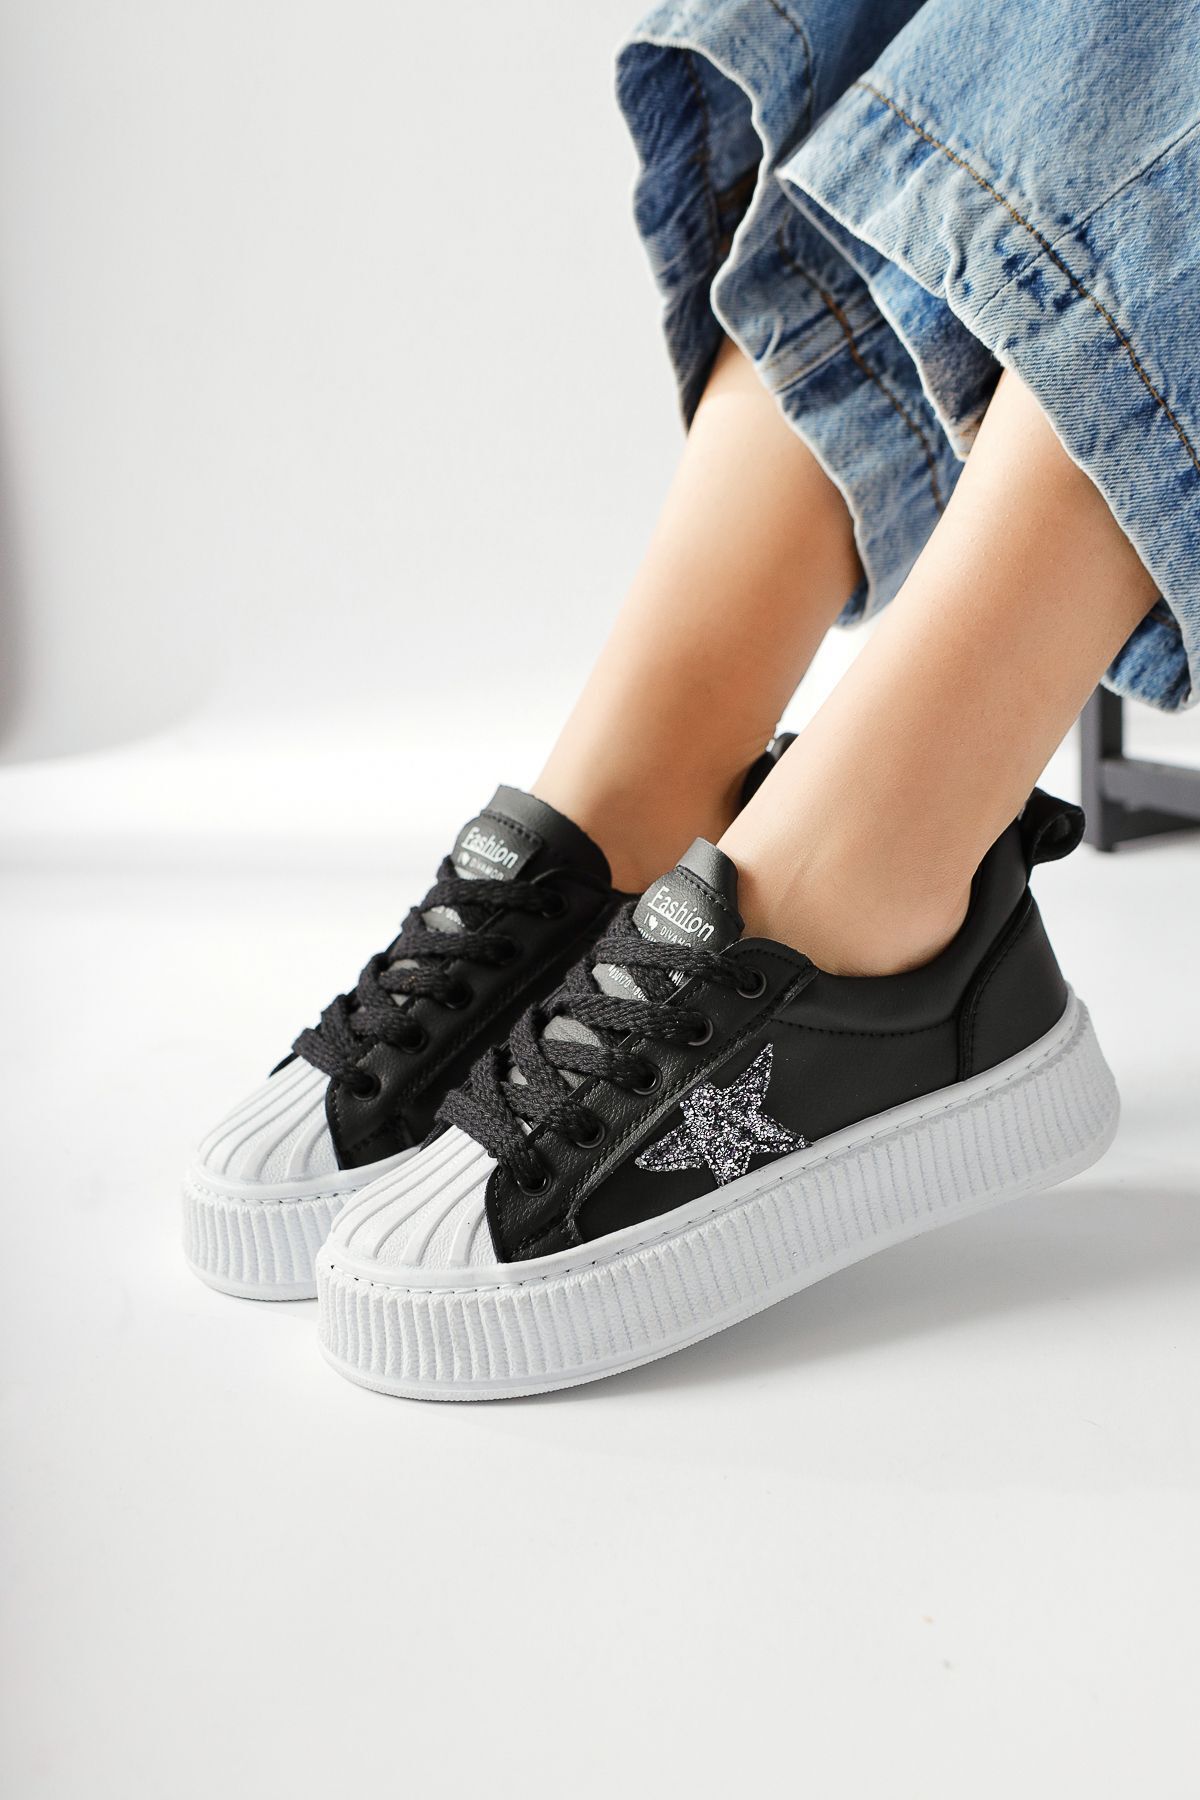 Limoya Lilita Siyah Payetli Yıldız Patchli Beyaz Tabanlı Sneakers